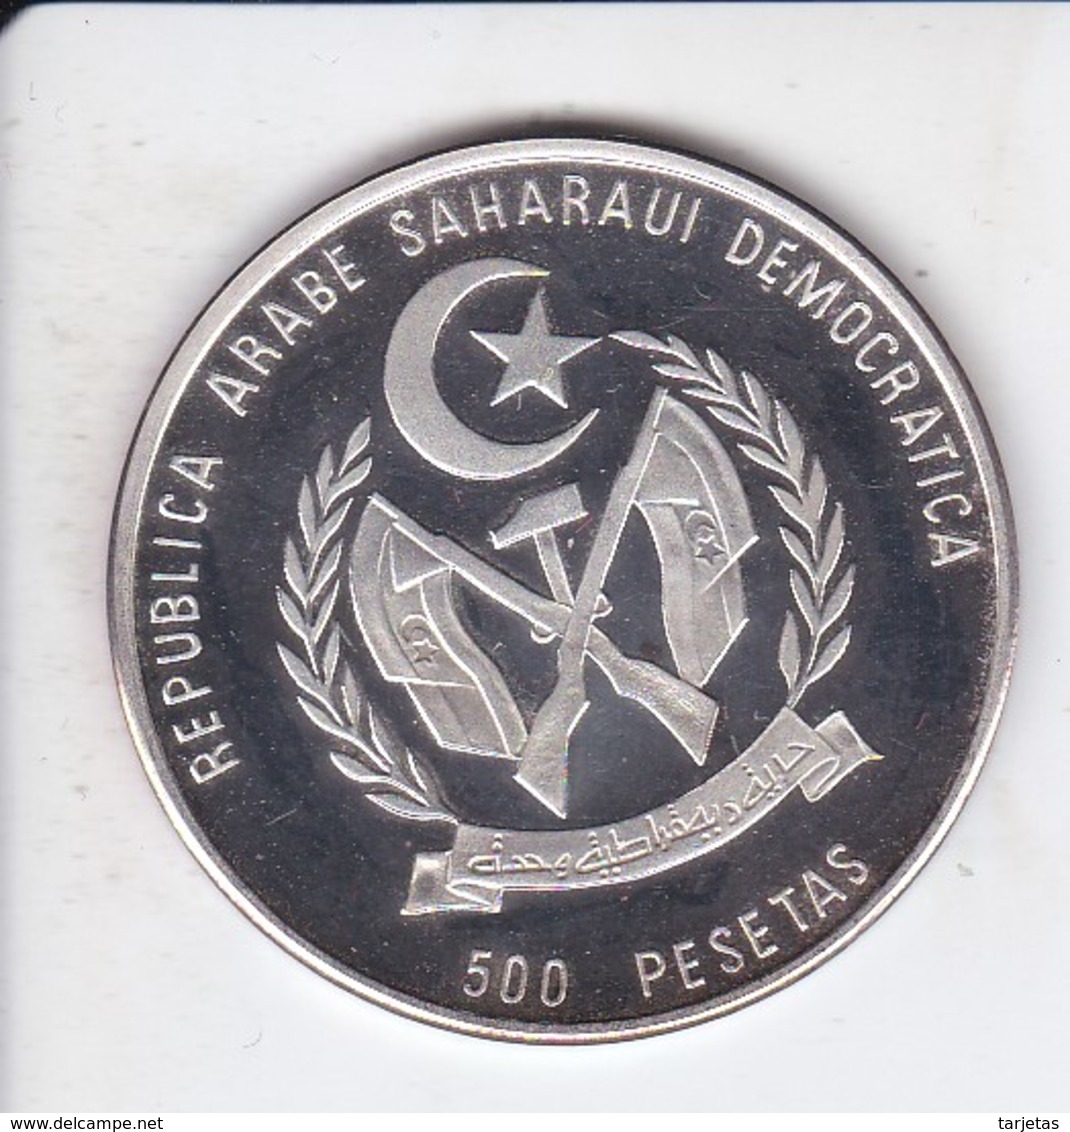 MONEDA DE PLATA DE REPUBLICA ARABE SAHARAUI DE 500 PESETAS DEL AÑO 1994 DINOSAURIO (SILVER-ARGENT) - Sahara Occidentale